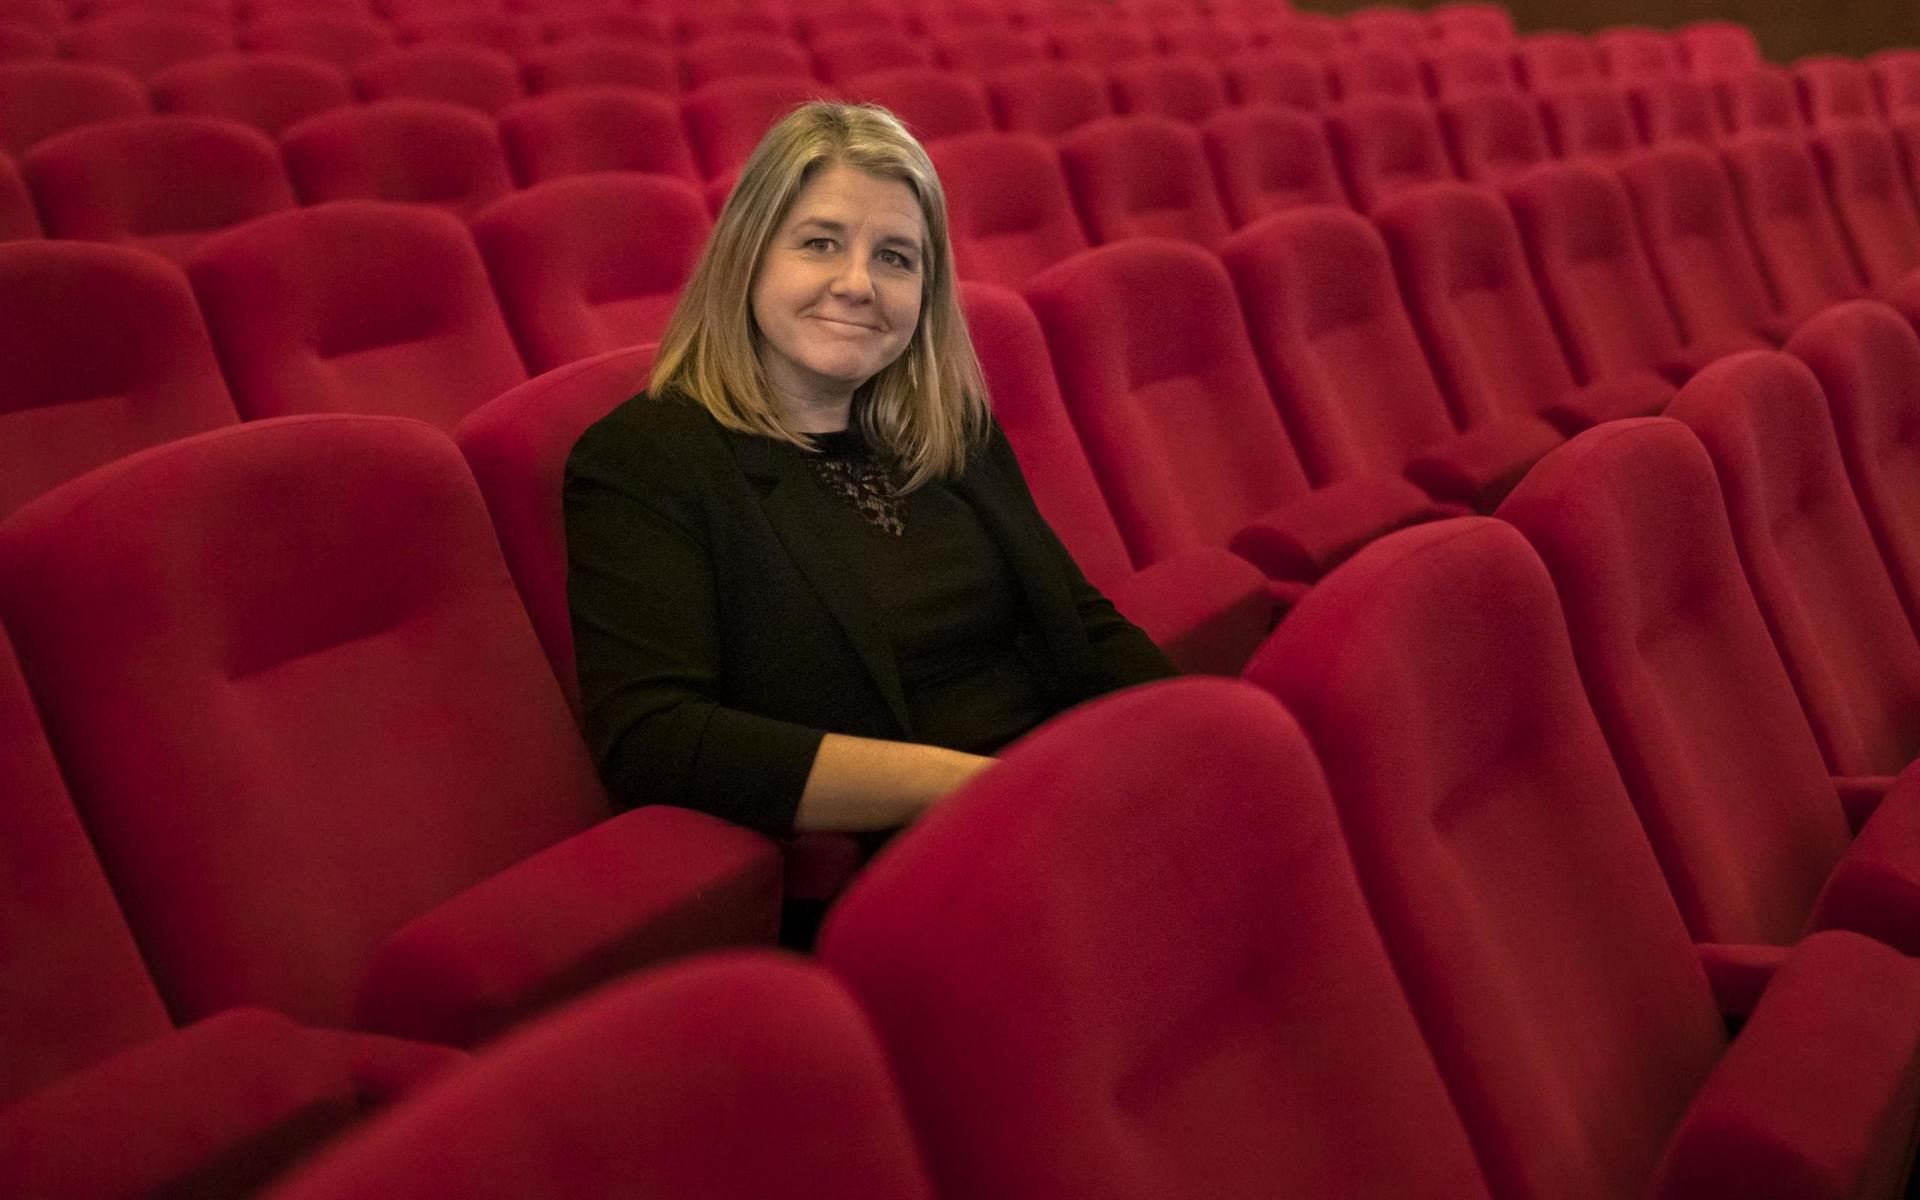 Invigning av Göteborg Film Festival 2021. Öppningsfilm var ”Tove”,  filmen om Tove Jansson. Filmen premiärvisade för en person, Marlena Ohlsson,  på biograf Draken och online för alla andra festivalbesökare.